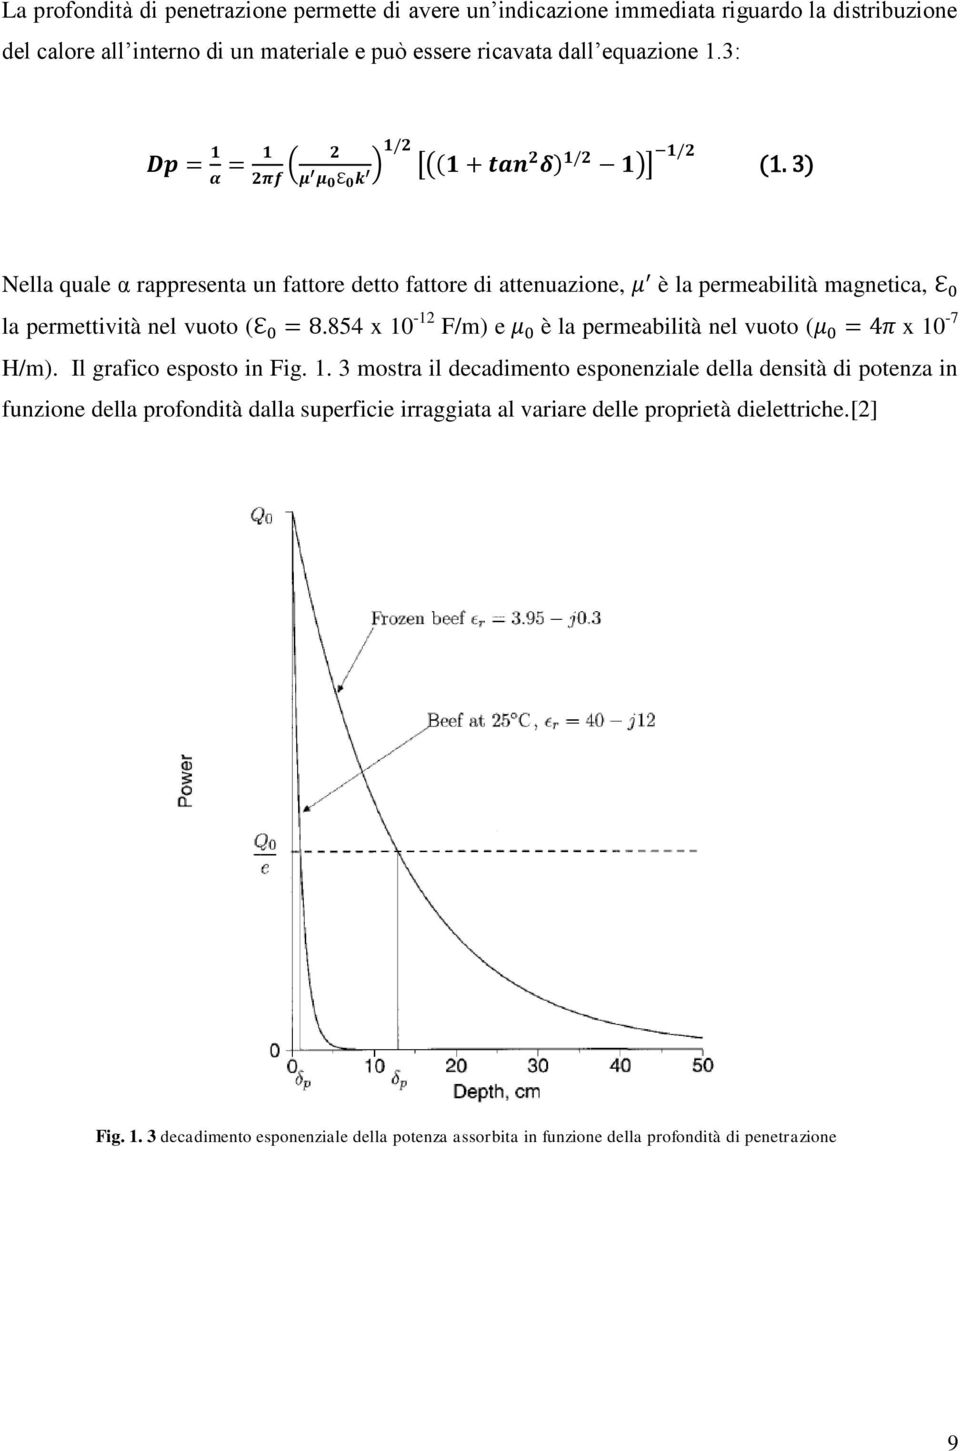 854 x 10-12 F/m) e è la permeabilità nel vuoto ( x 10-7 H/m). Il grafico esposto in Fig. 1. 3 mostra il decadimento esponenziale della densità di potenza in funzione della profondità dalla superficie irraggiata al variare delle proprietà dielettriche.